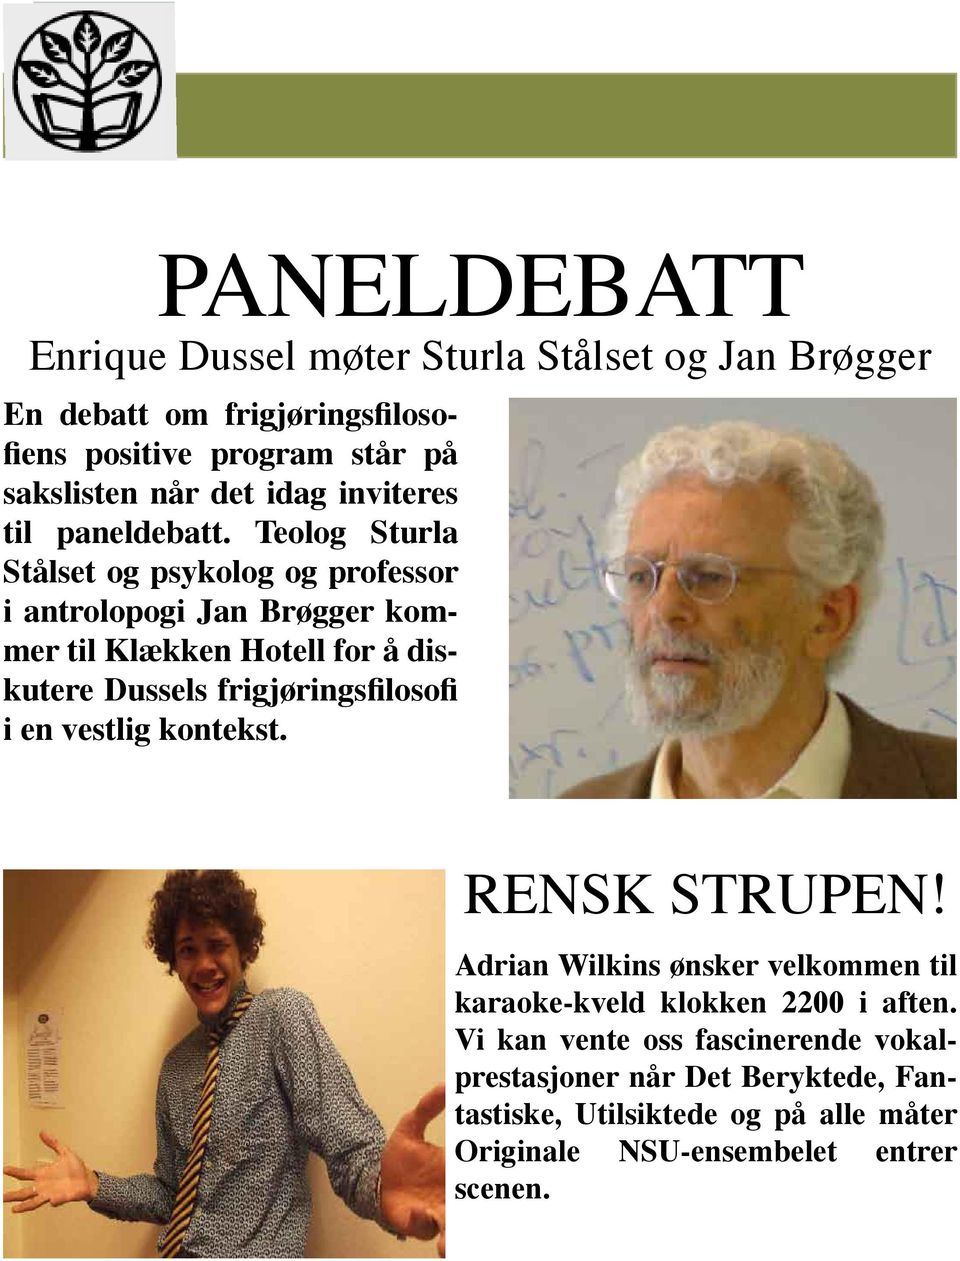 Teolog Sturla Stålset og psykolog og professor i antrolopogi Jan Brøgger kommer til Klækken Hotell for å diskutere Dussels frigjøringsfilosofi i en Issue vestlig